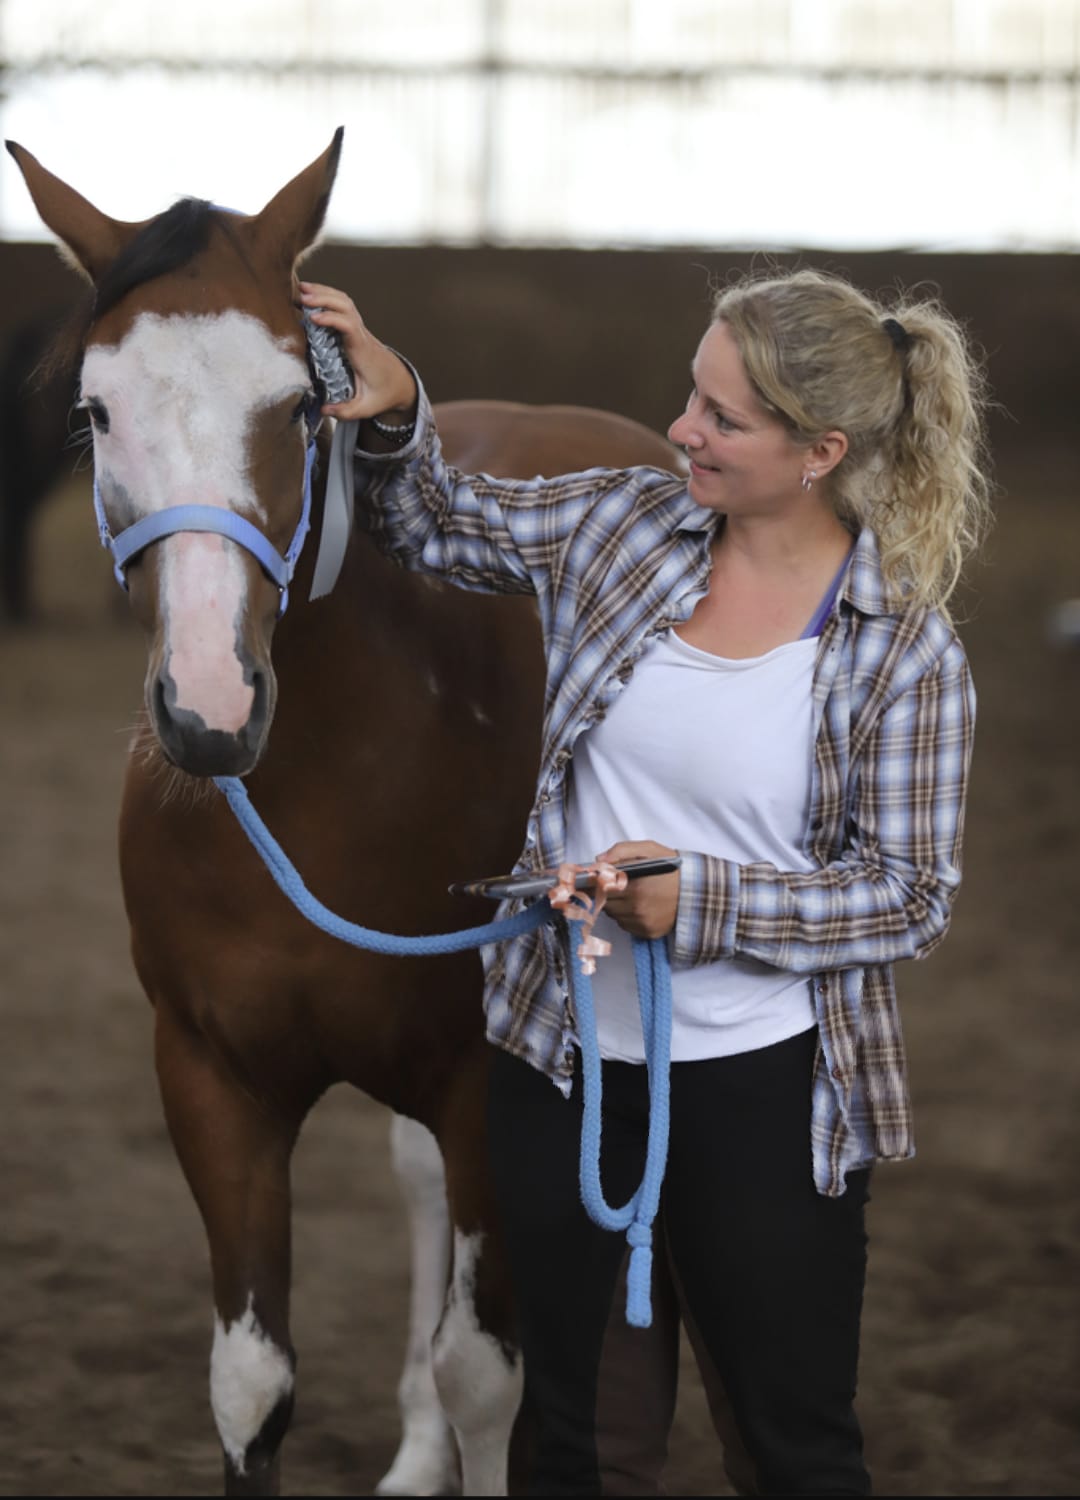 Kundin von Tierkommunikatorin, Nina, schaut ihr Pferd Giorgi in einer Reithalle an